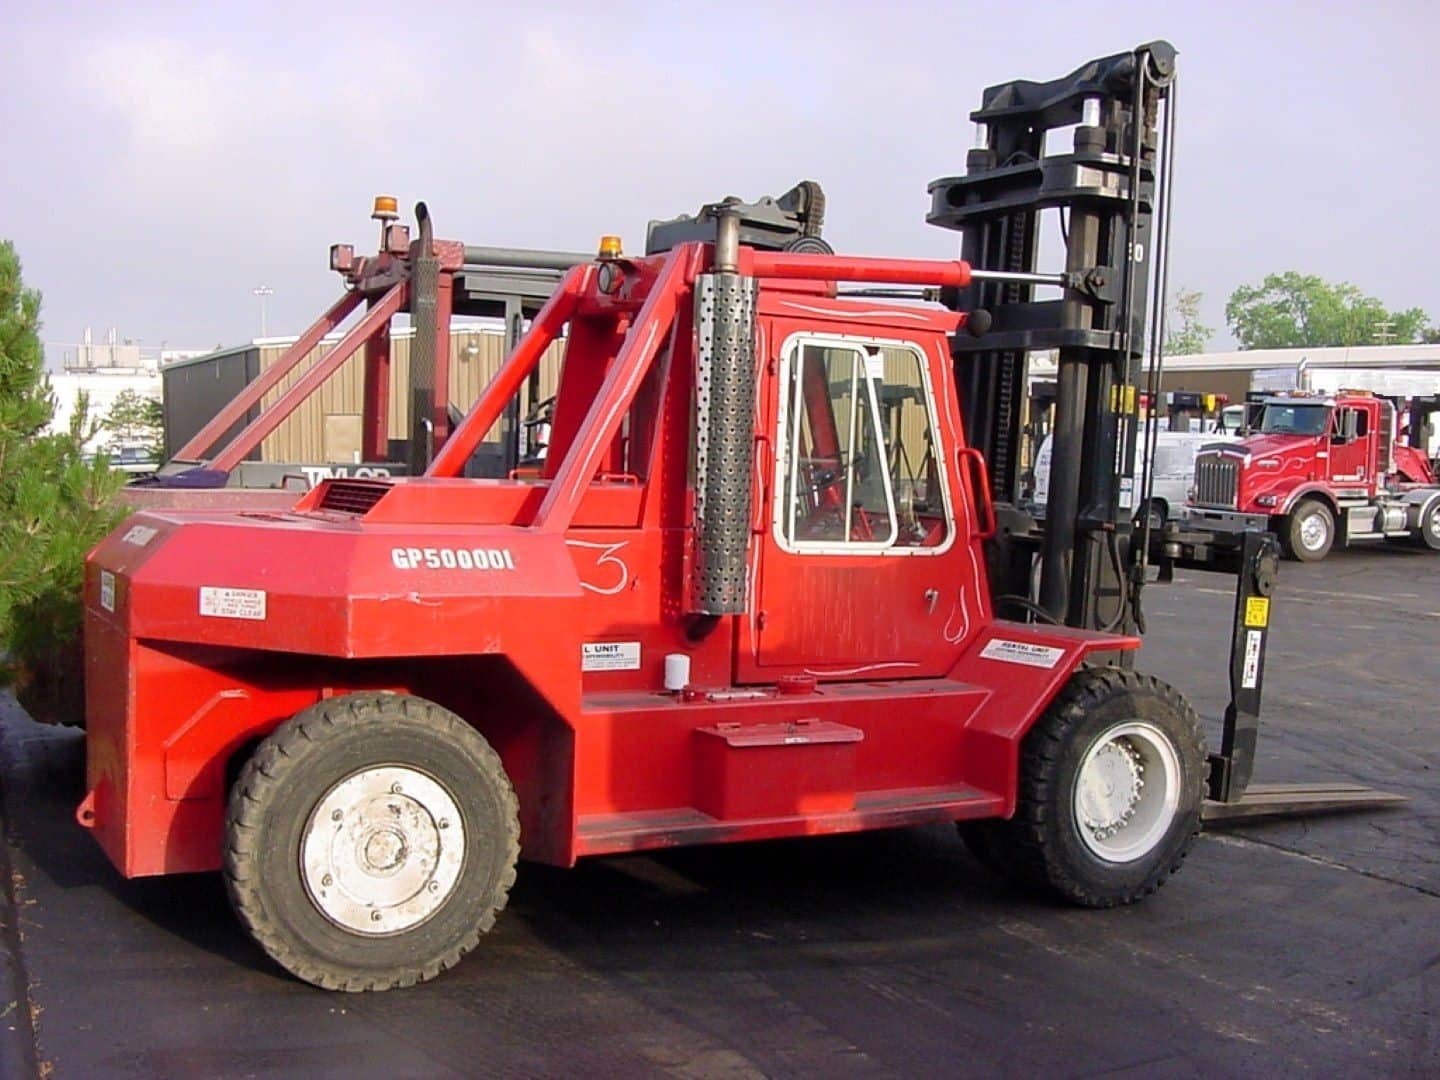 50,000lb. Capacity Bristol Forklift For Sale